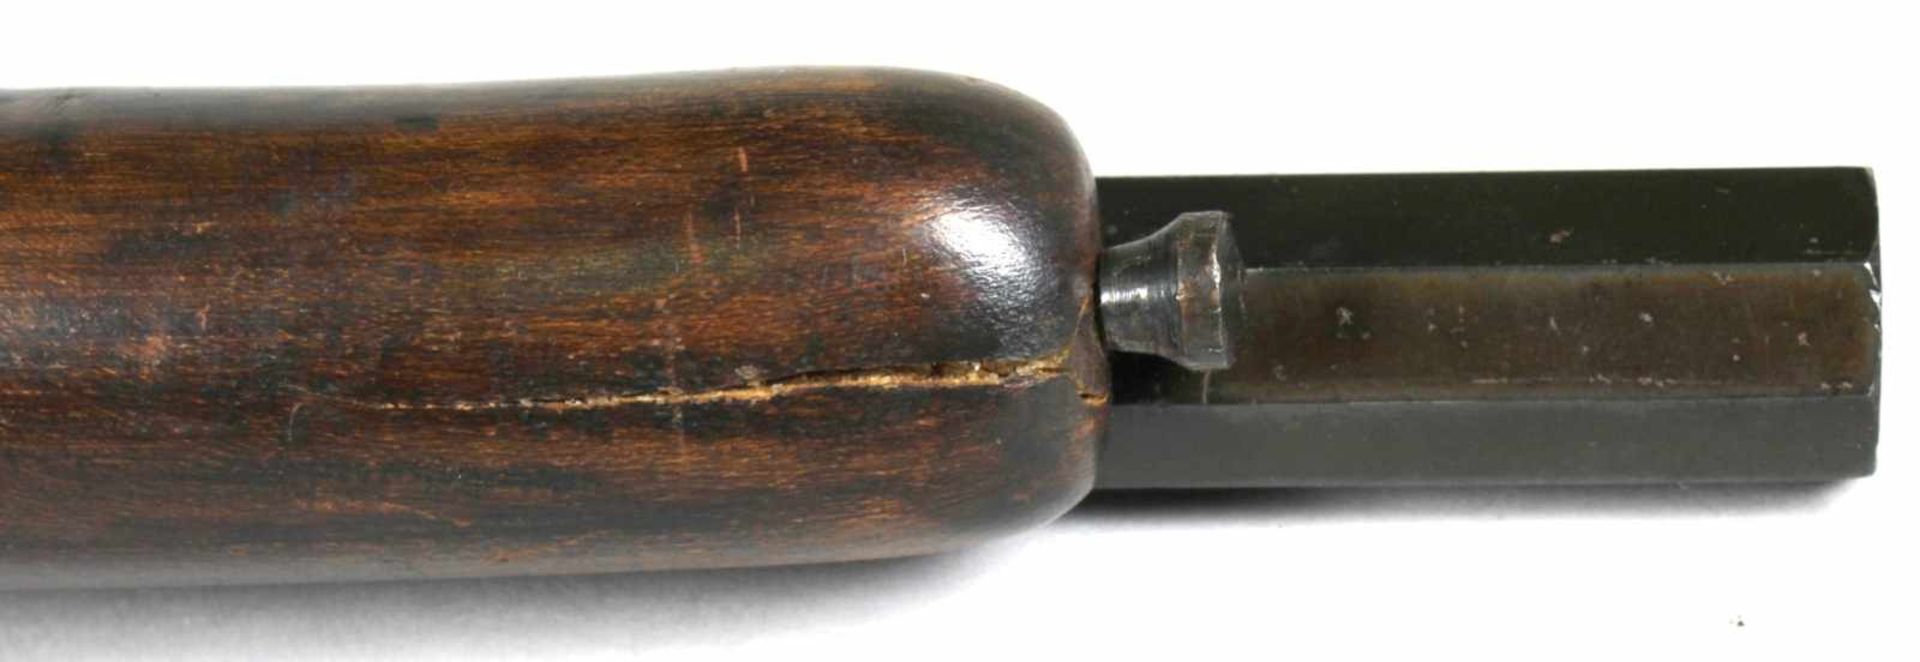 Perkussionspistole, um 1800, brünierter Eisenlauf, -schloß, -beschläge und -abzugshahnsowie Kim - Bild 3 aus 8